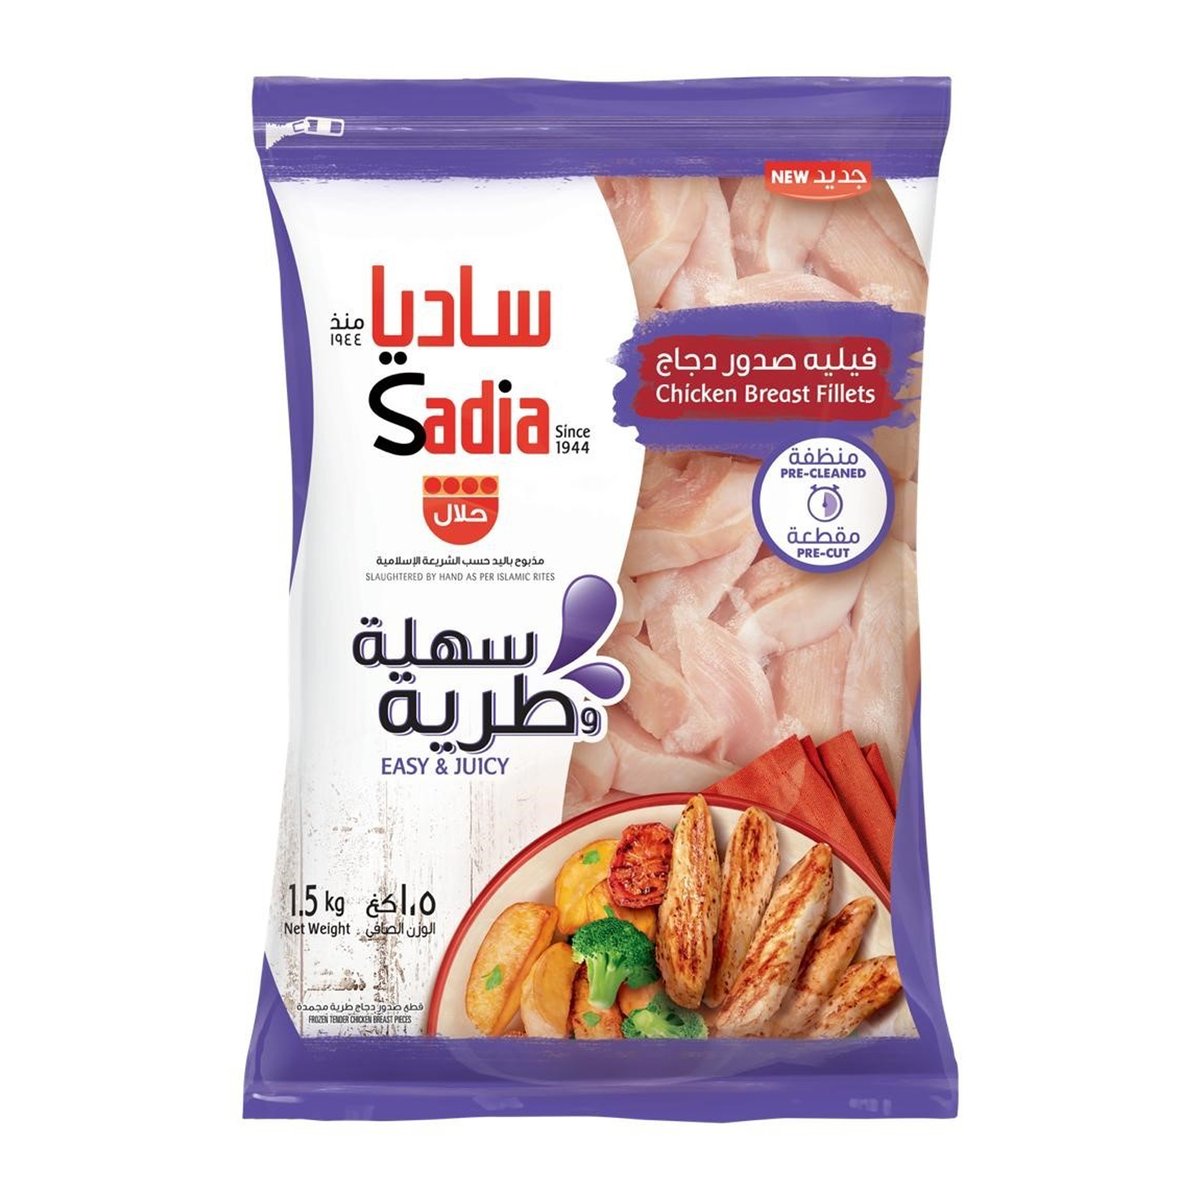 Buy Sadia Frozen Chicken Breast Fillet 1.5 kg Online at Best Price | Nuggets | Lulu UAE in Saudi Arabia